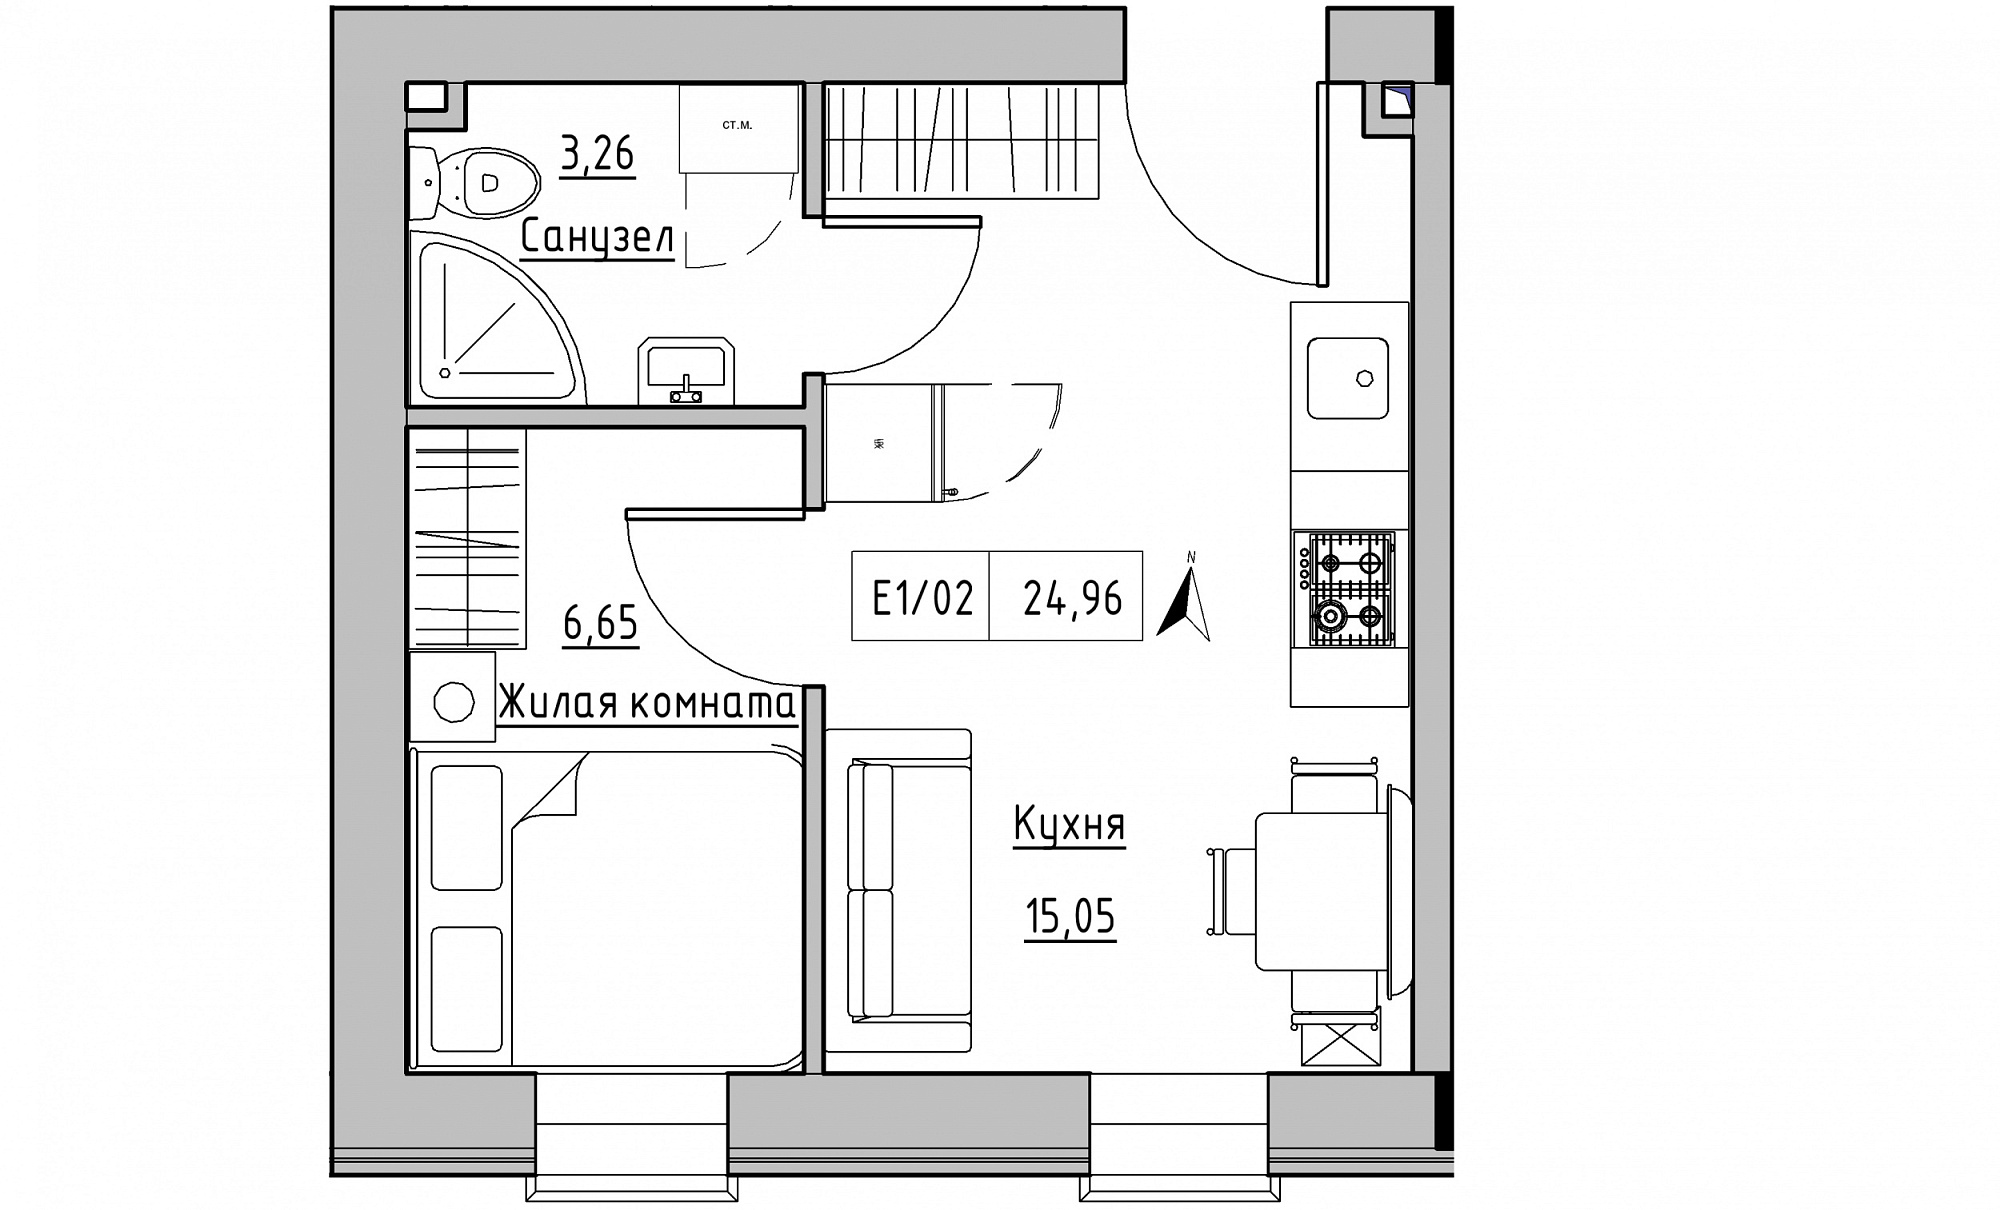 Планування 1-к квартира площею 24.96м2, KS-015-01/0012.